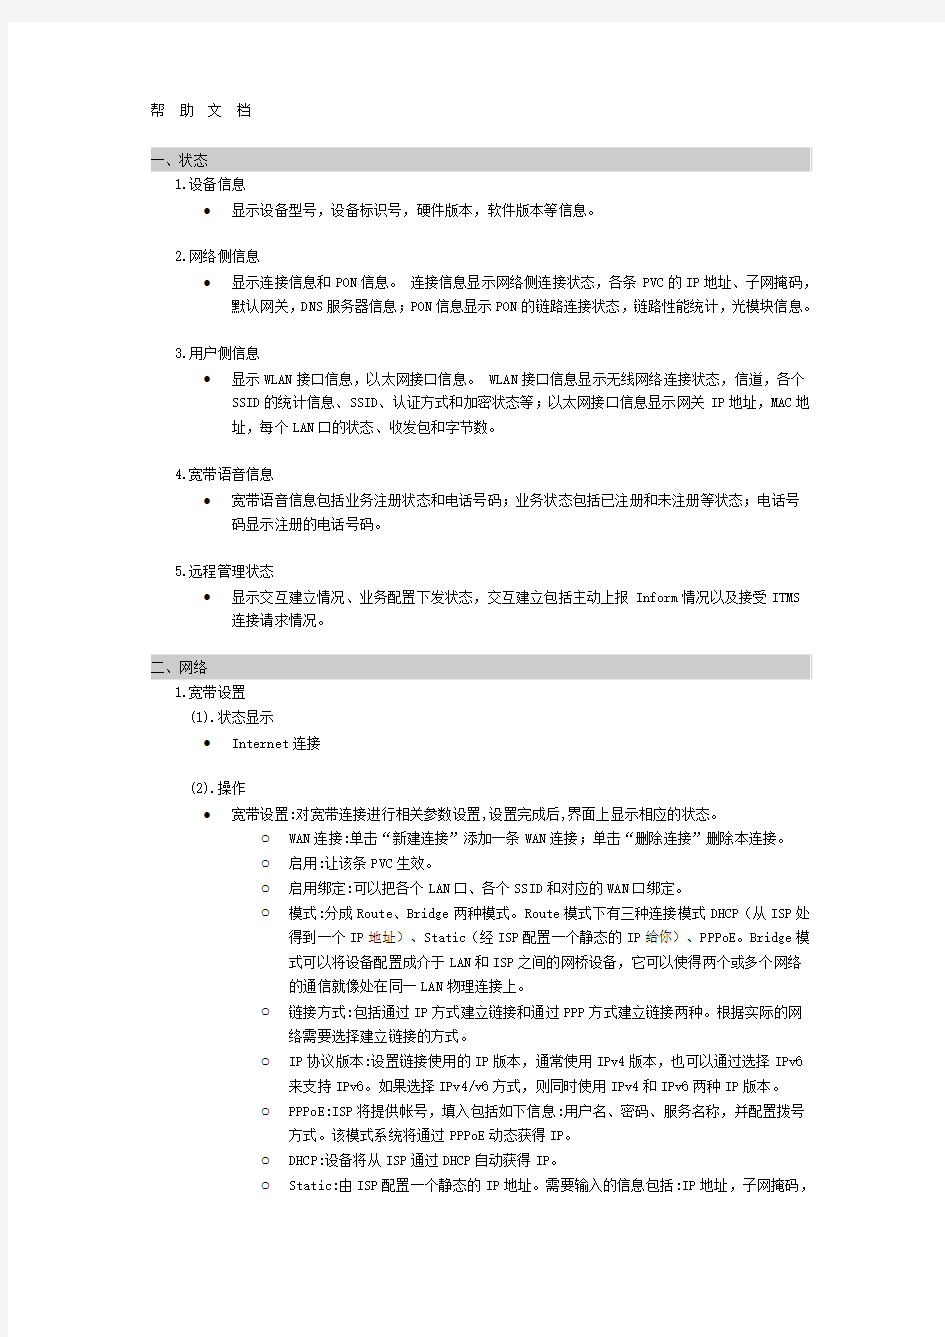 中国移动智能家庭网关帮助文档